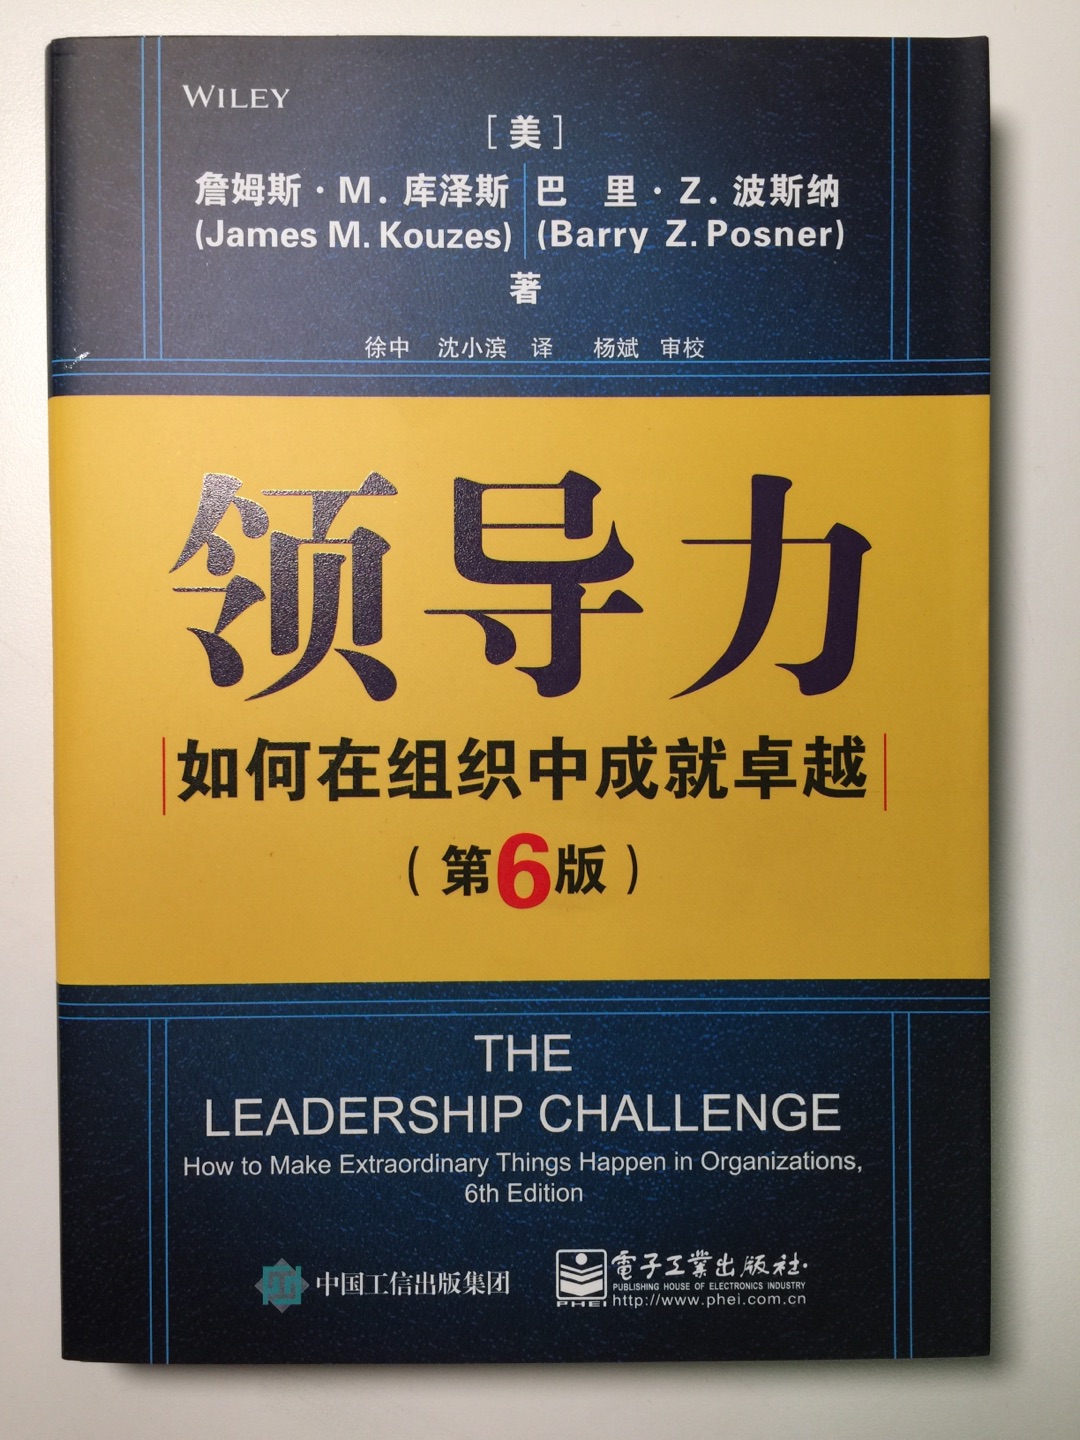 学习领导力的一本好书 值得一读！